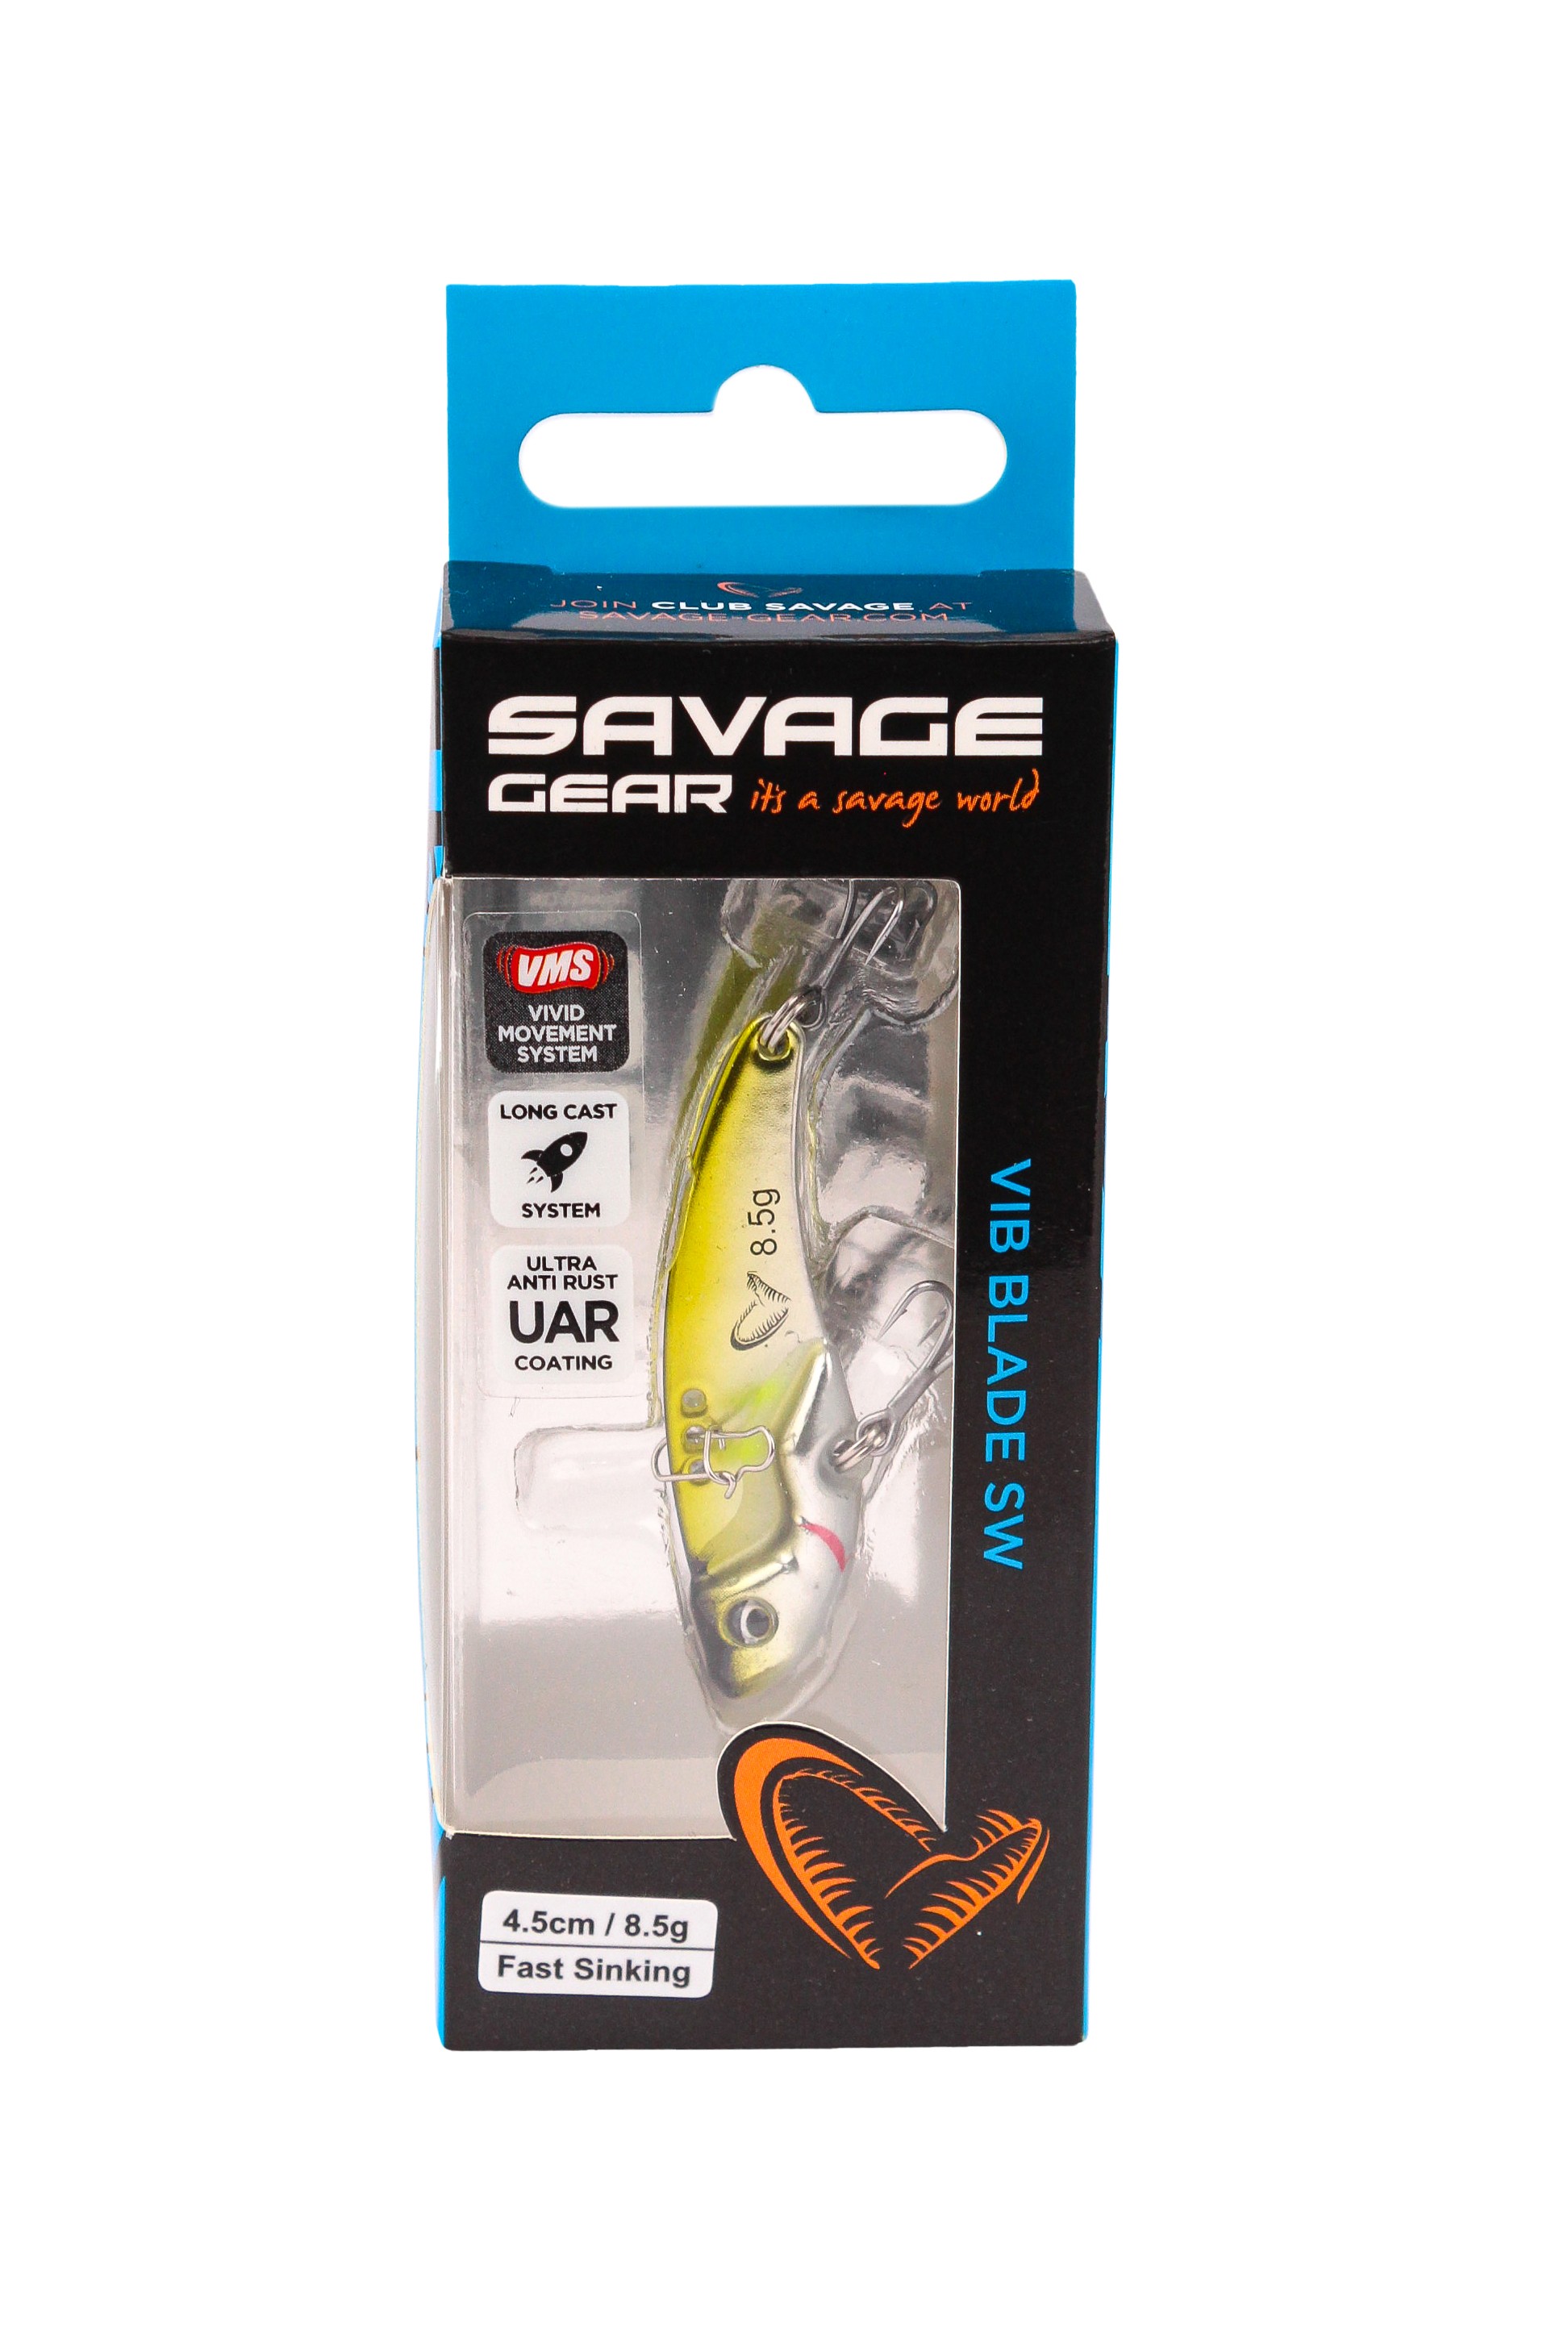 Блесна Savage Gear Vib blade SW 4,5см 8,5гр fast sinking mirror ayu - фото 1